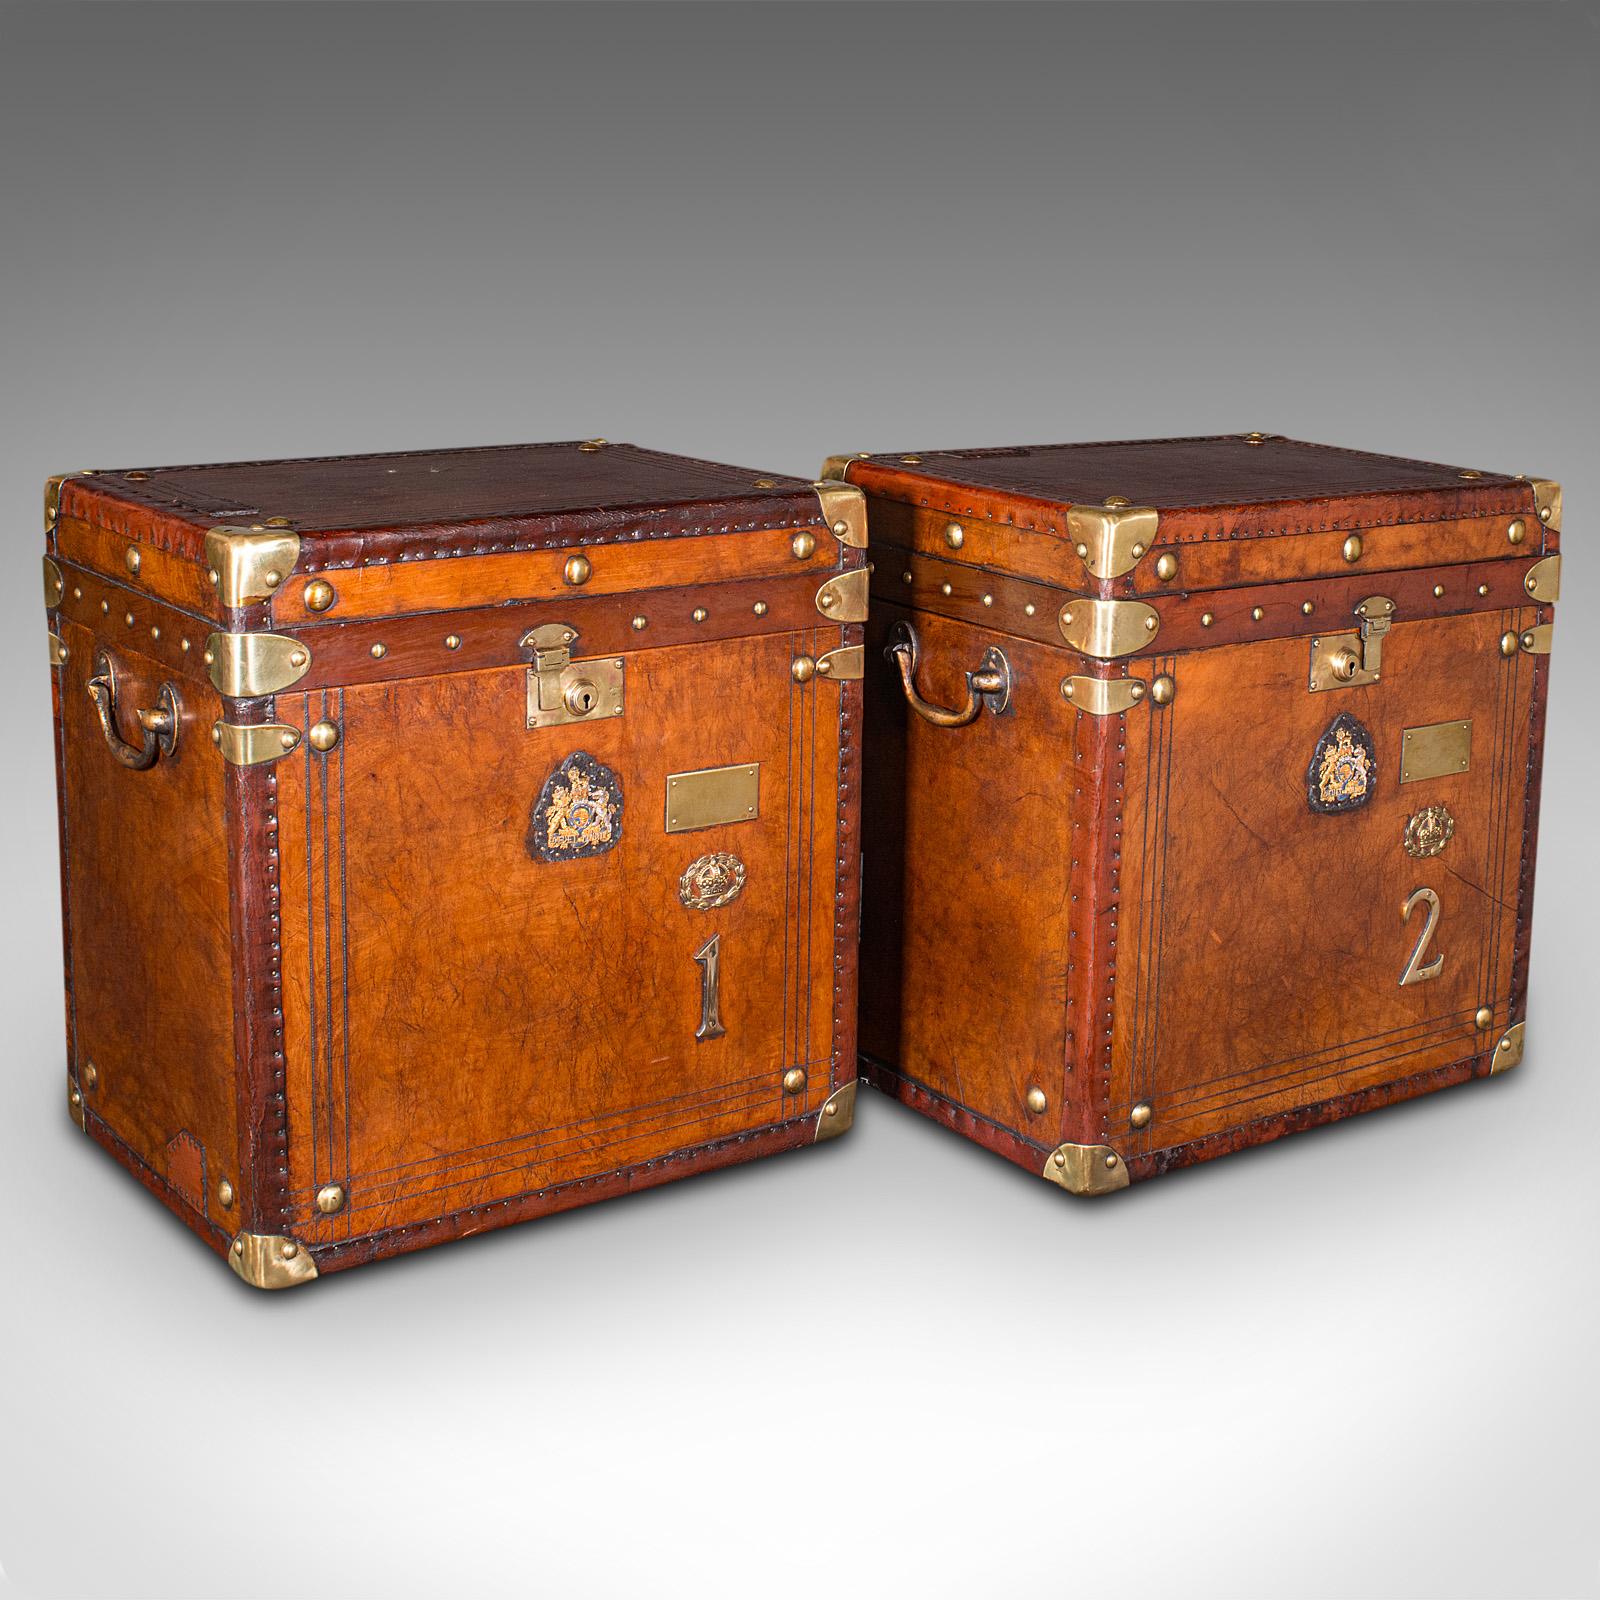 Il s'agit d'une paire de valises de campagne d'officier anciennes. Table de nuit anglaise en cuir et laiton, datant de la fin de la période édouardienne, vers 1910.

Menuiserie exquise, avec des détails et des finitions de grande qualité
Présente